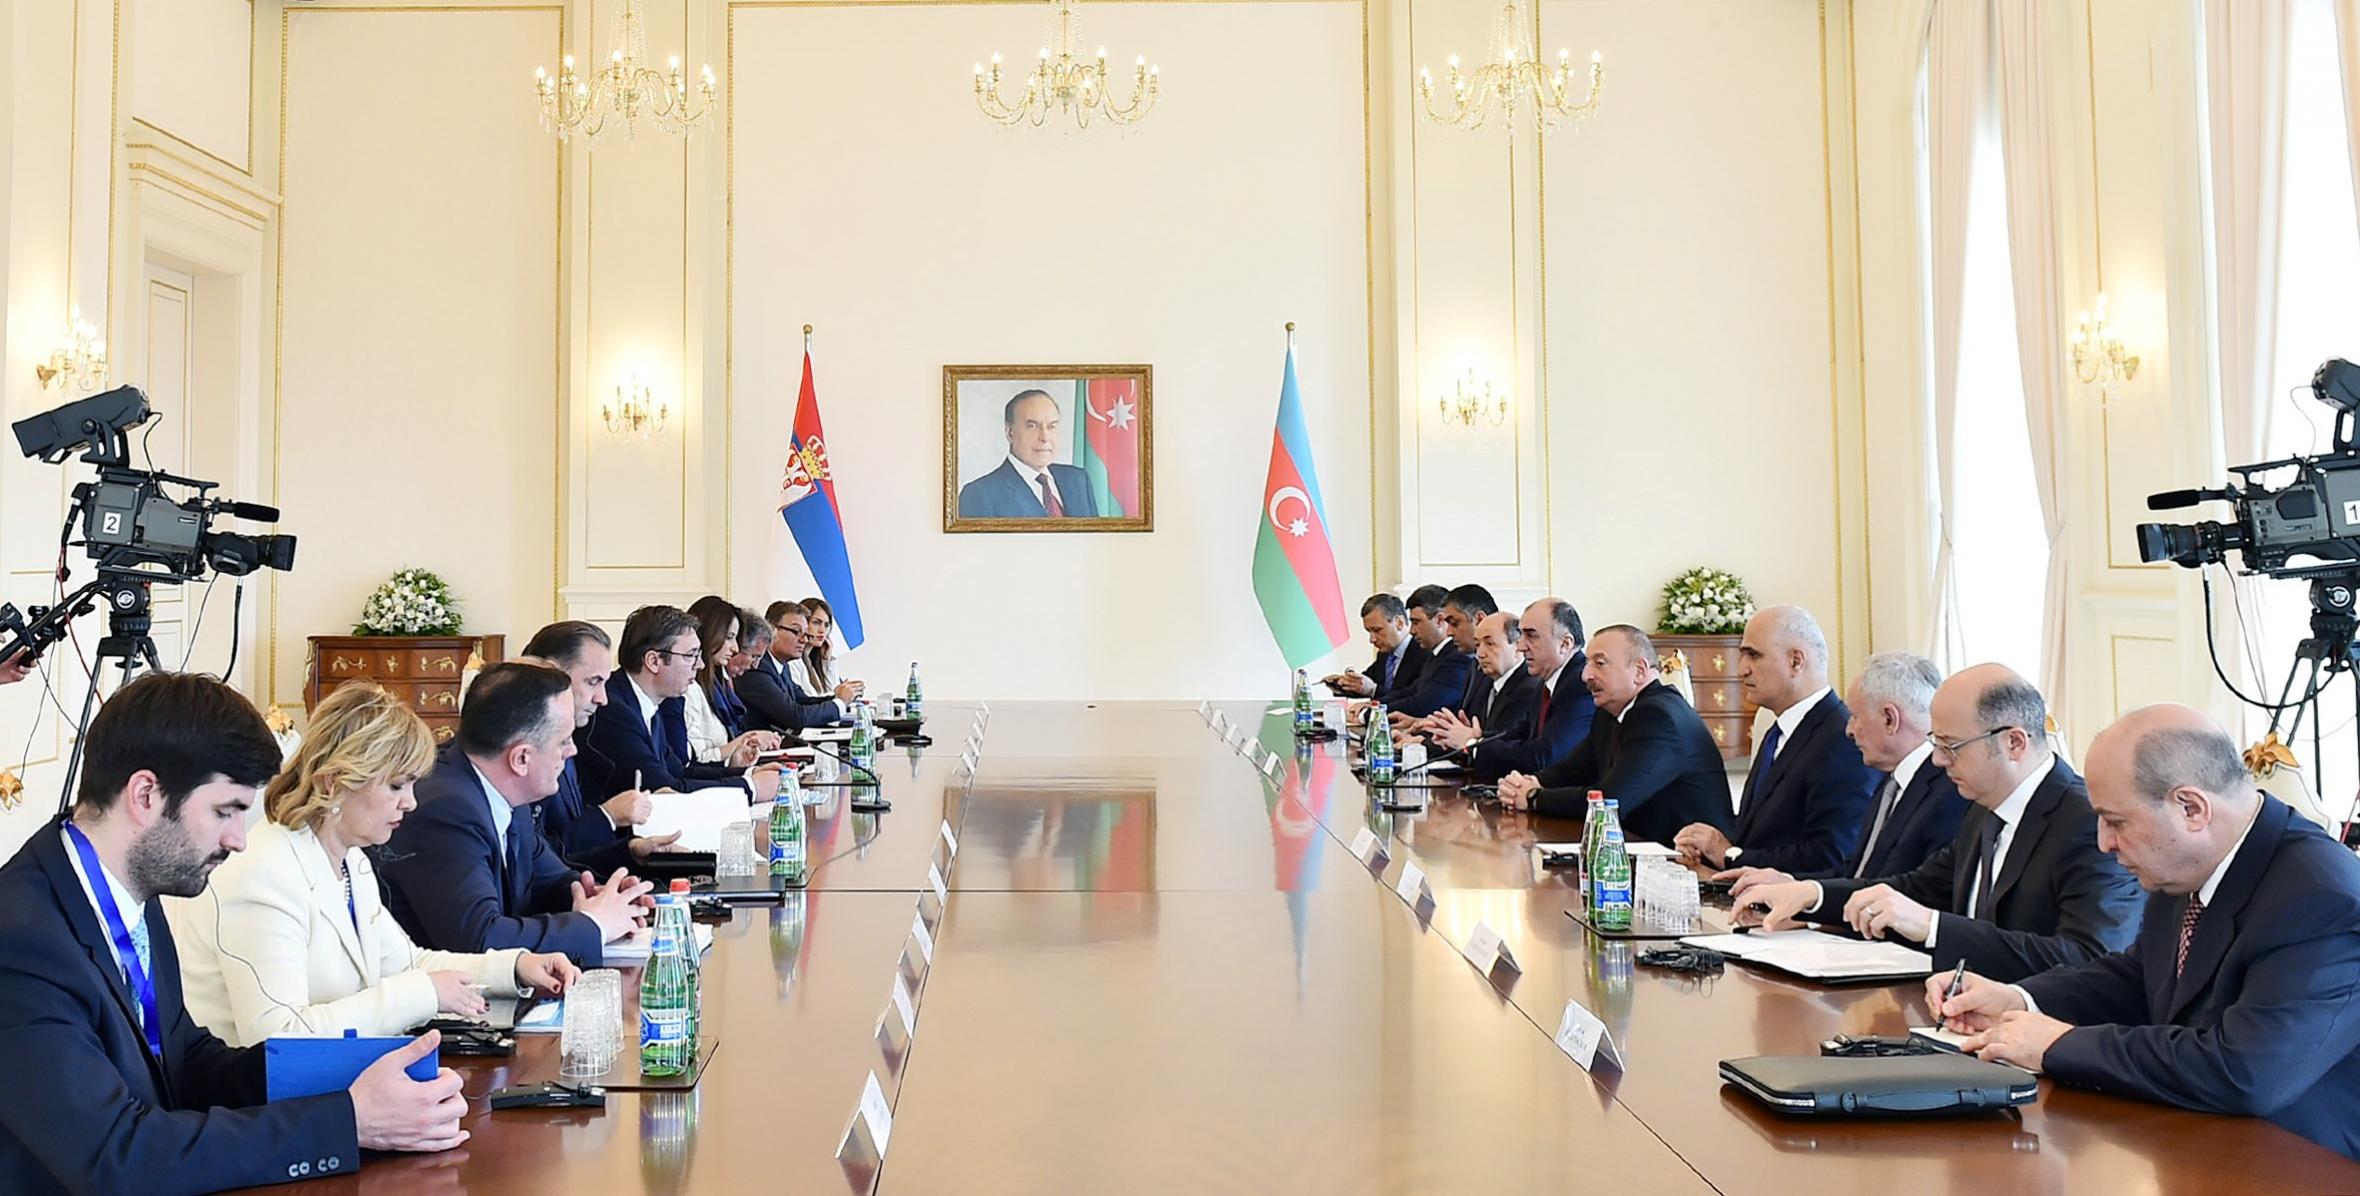 Состоялась встреча Ильхама Алиева и Президента Республики Сербия Александра Вучича в расширенном составе с участием делегаций